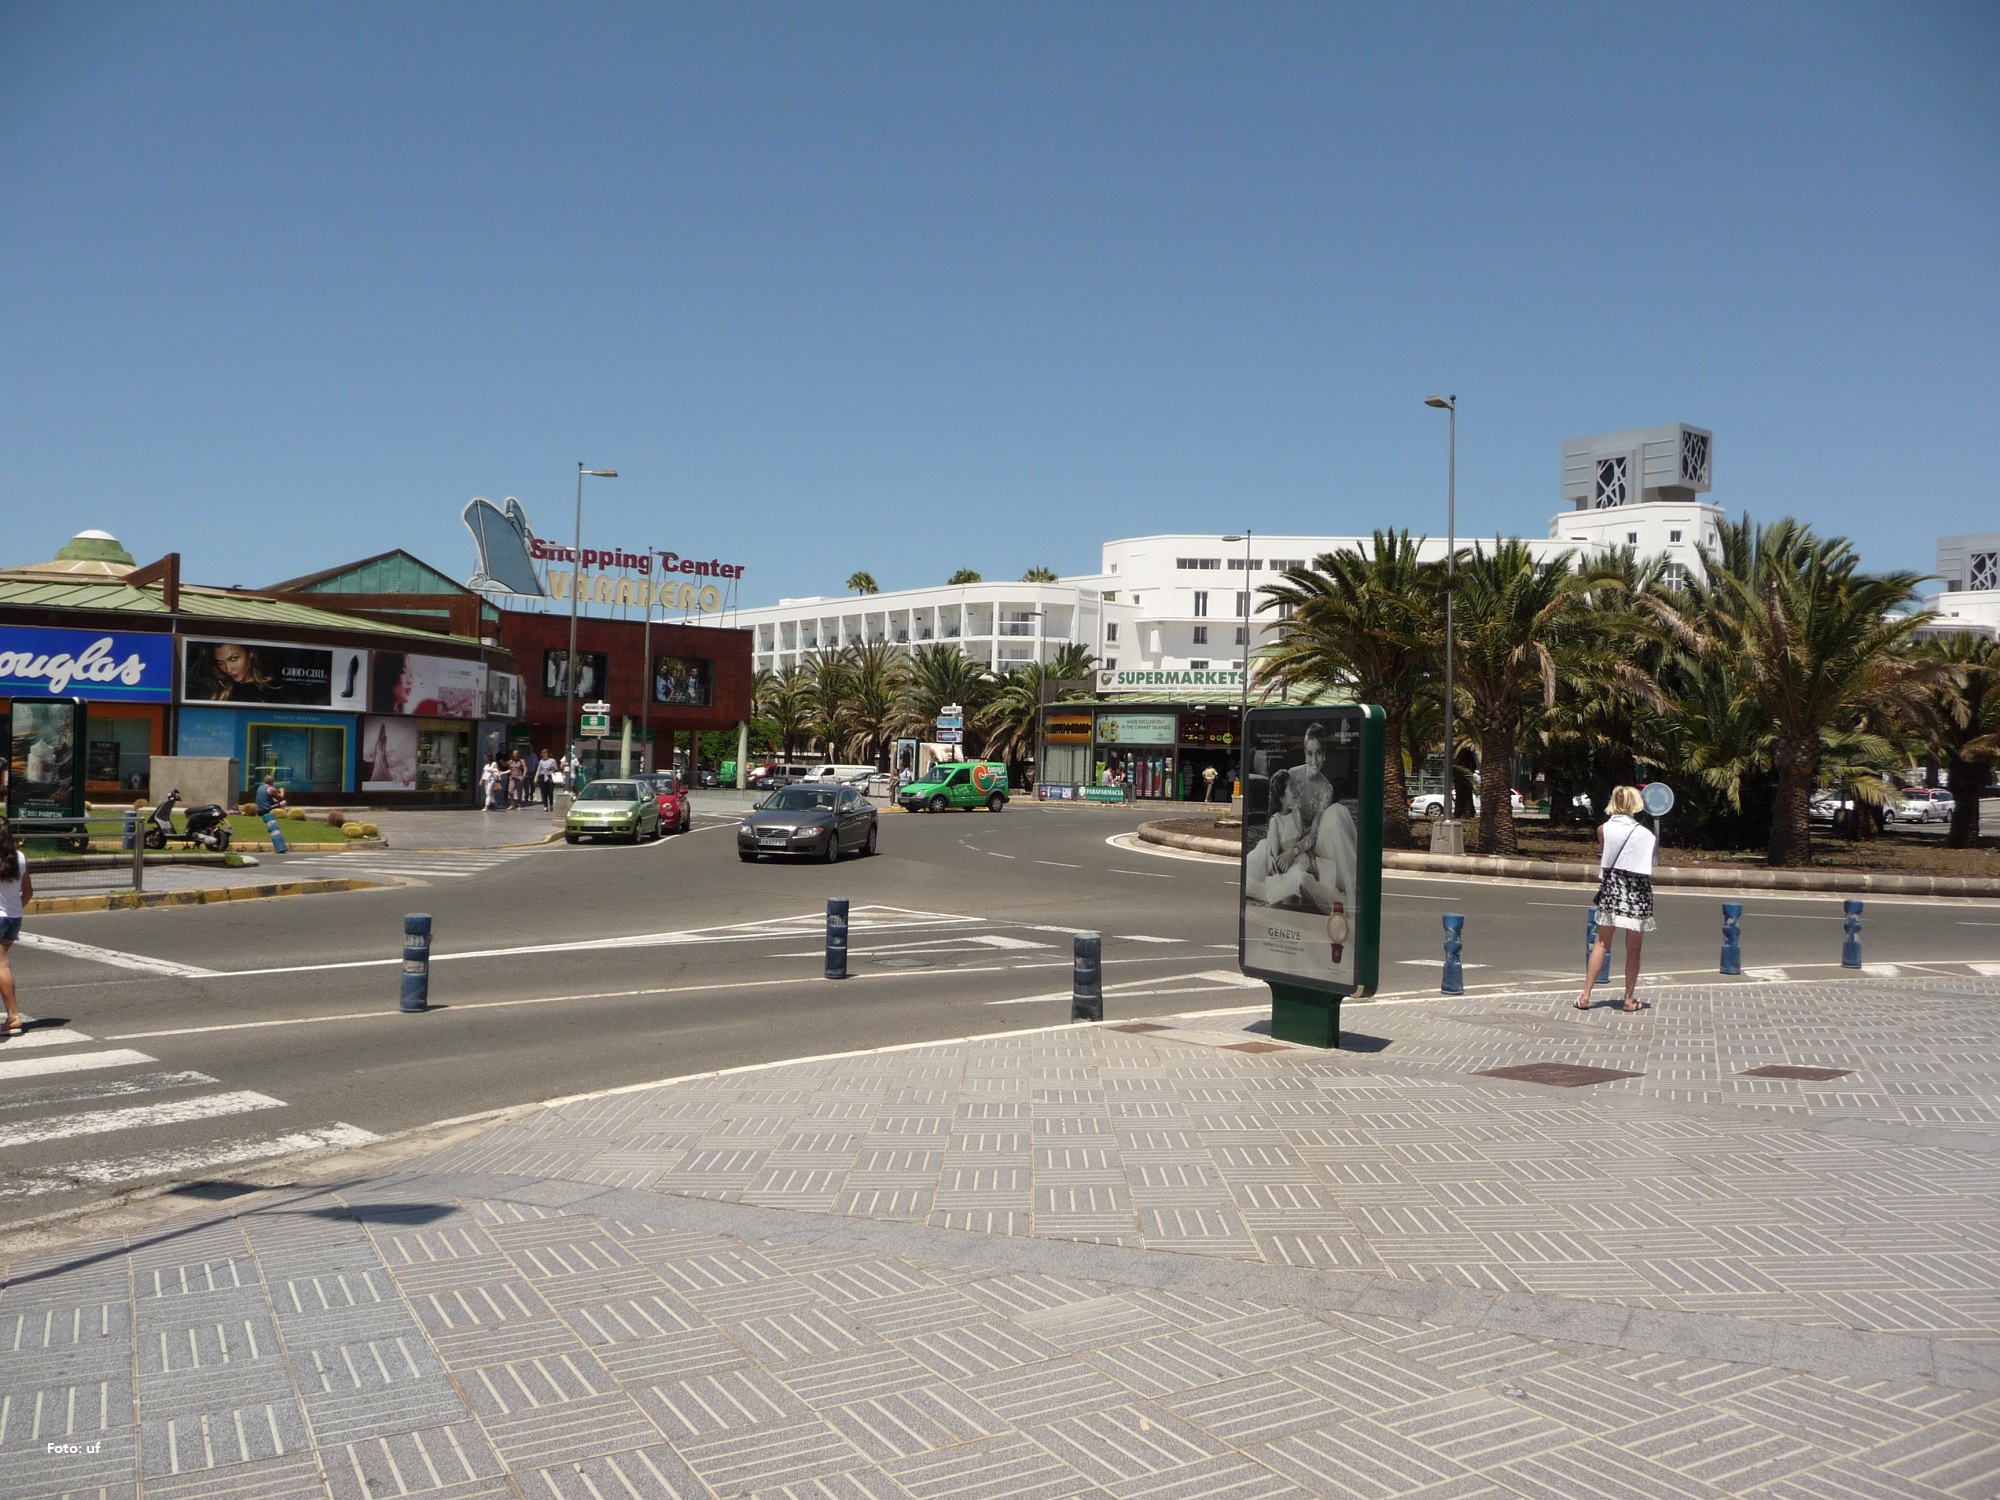 Blick auf das Shoppingcenter "Varadero", die weißen Gebäude im Hintergrund gehören zum Hotel Riu Palace Meloneras Resort